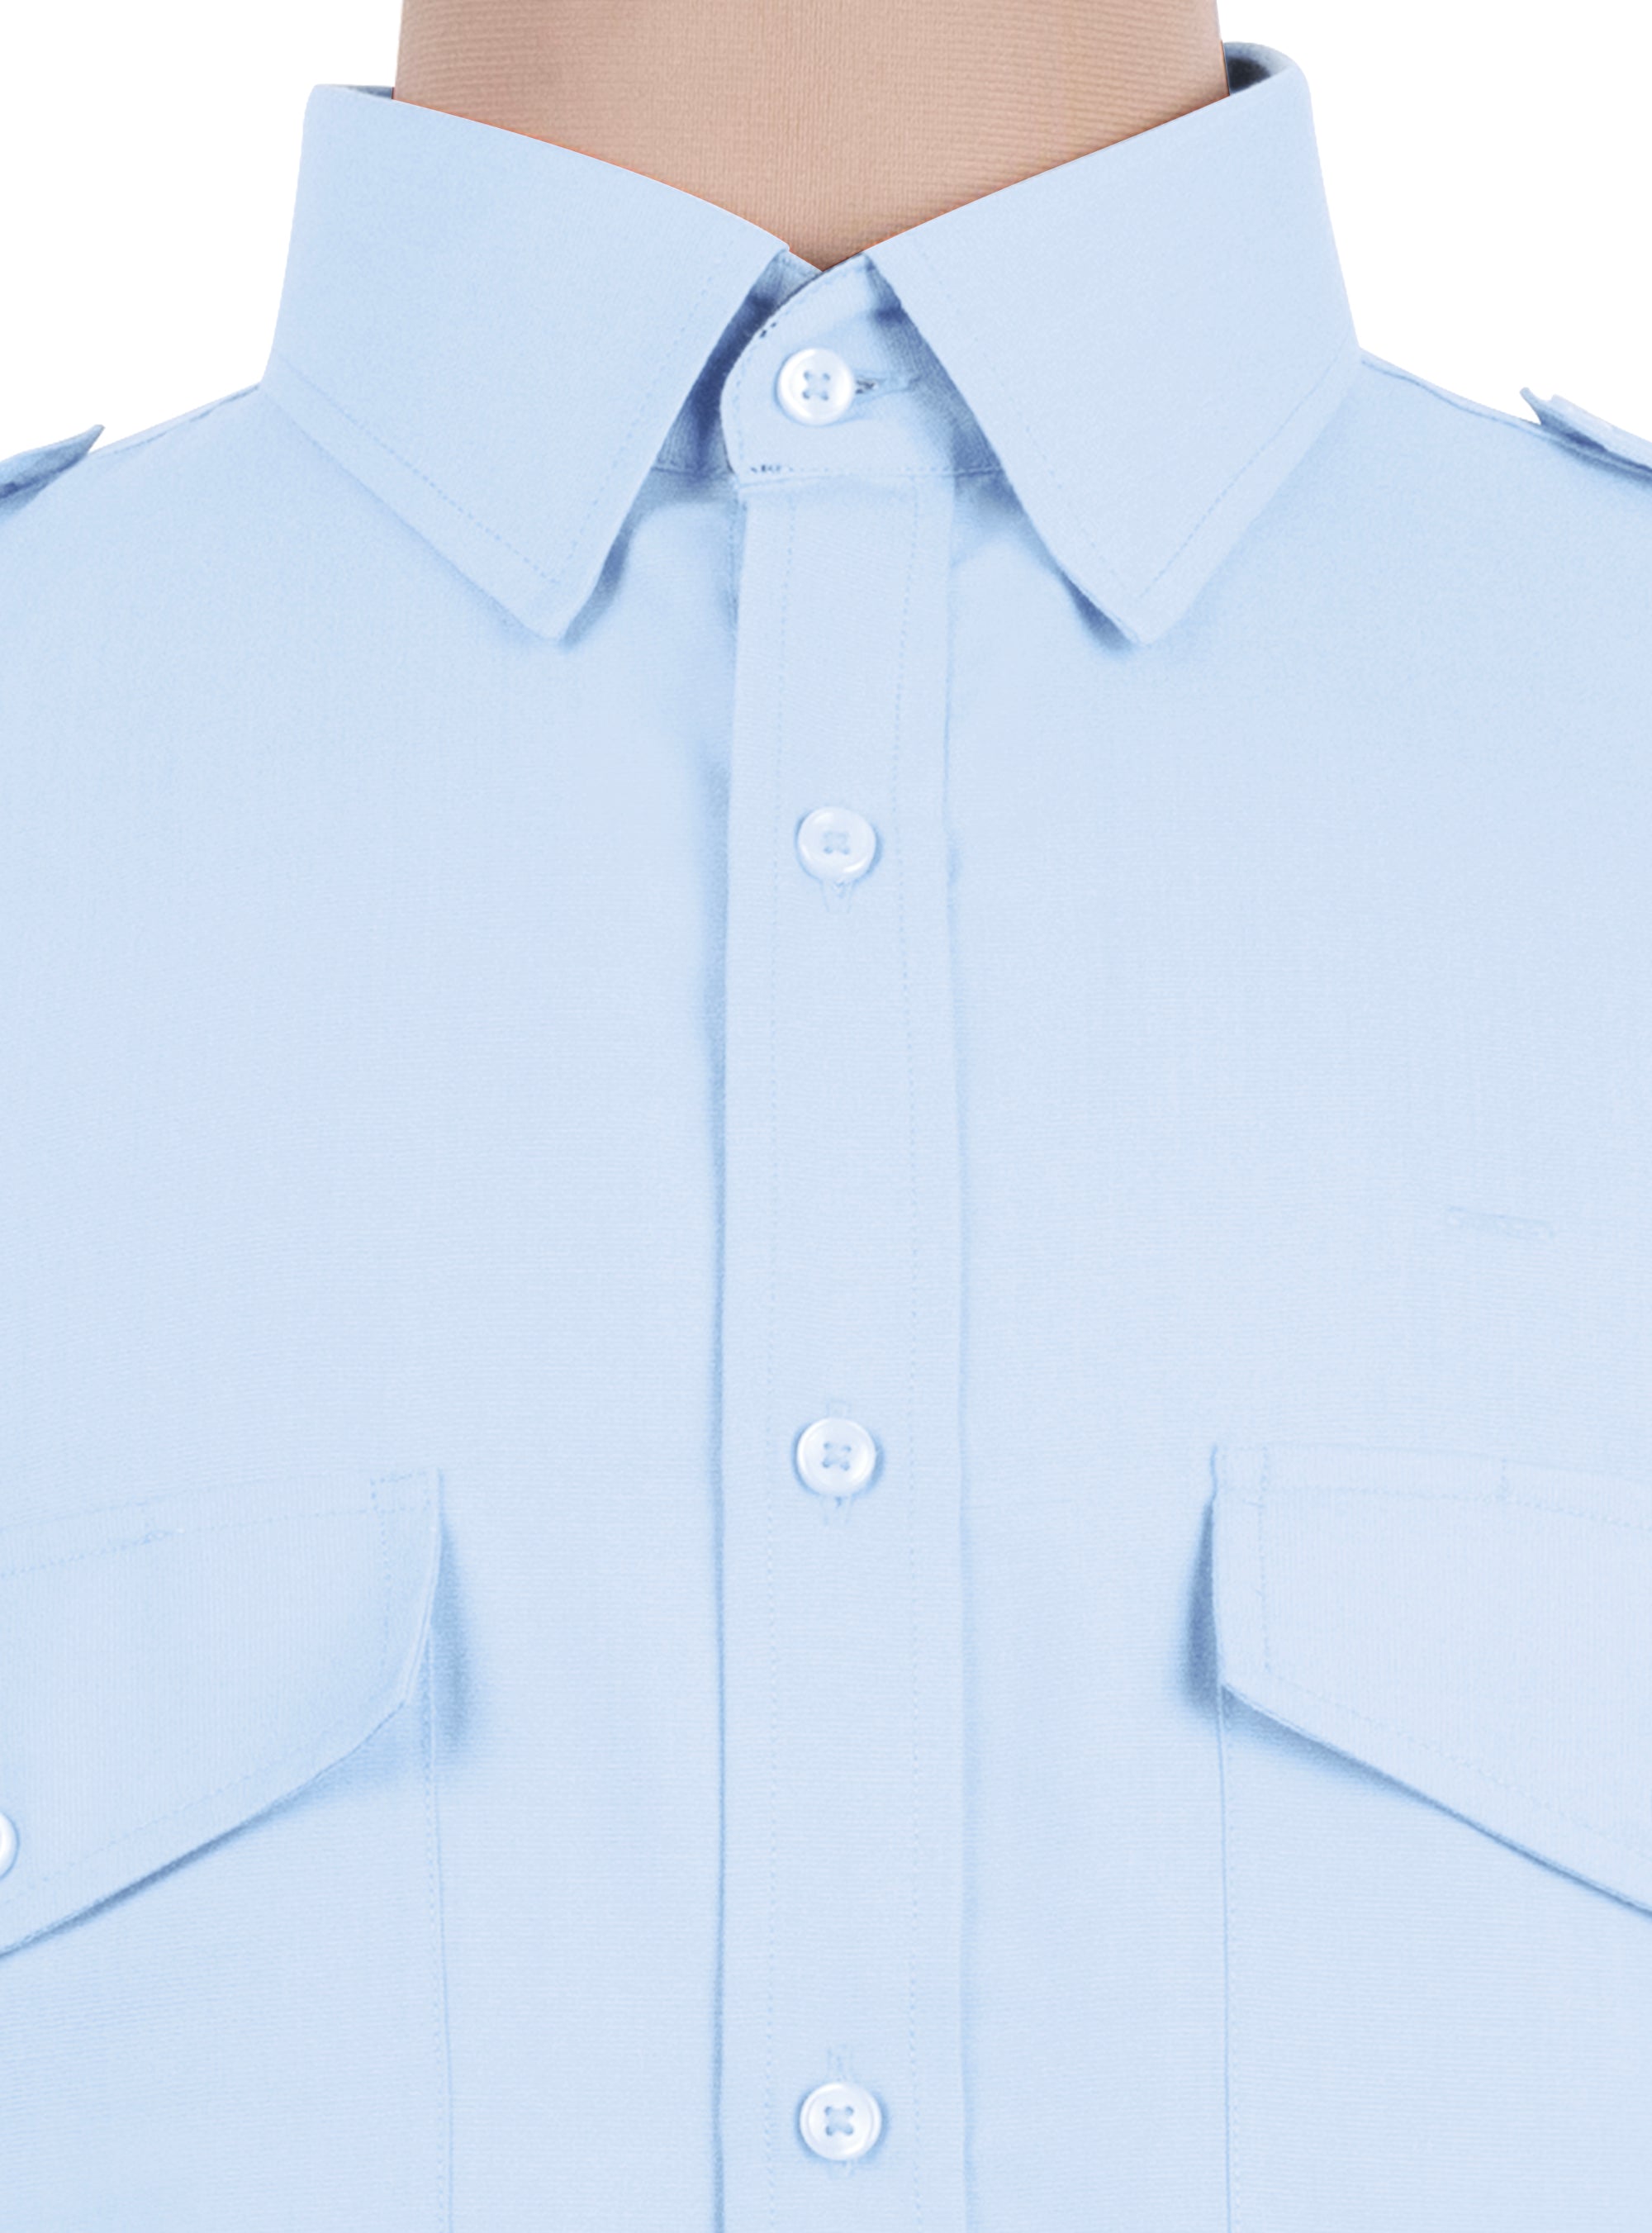 Blue Polycotton ln-Stock Pilot Shirt Women